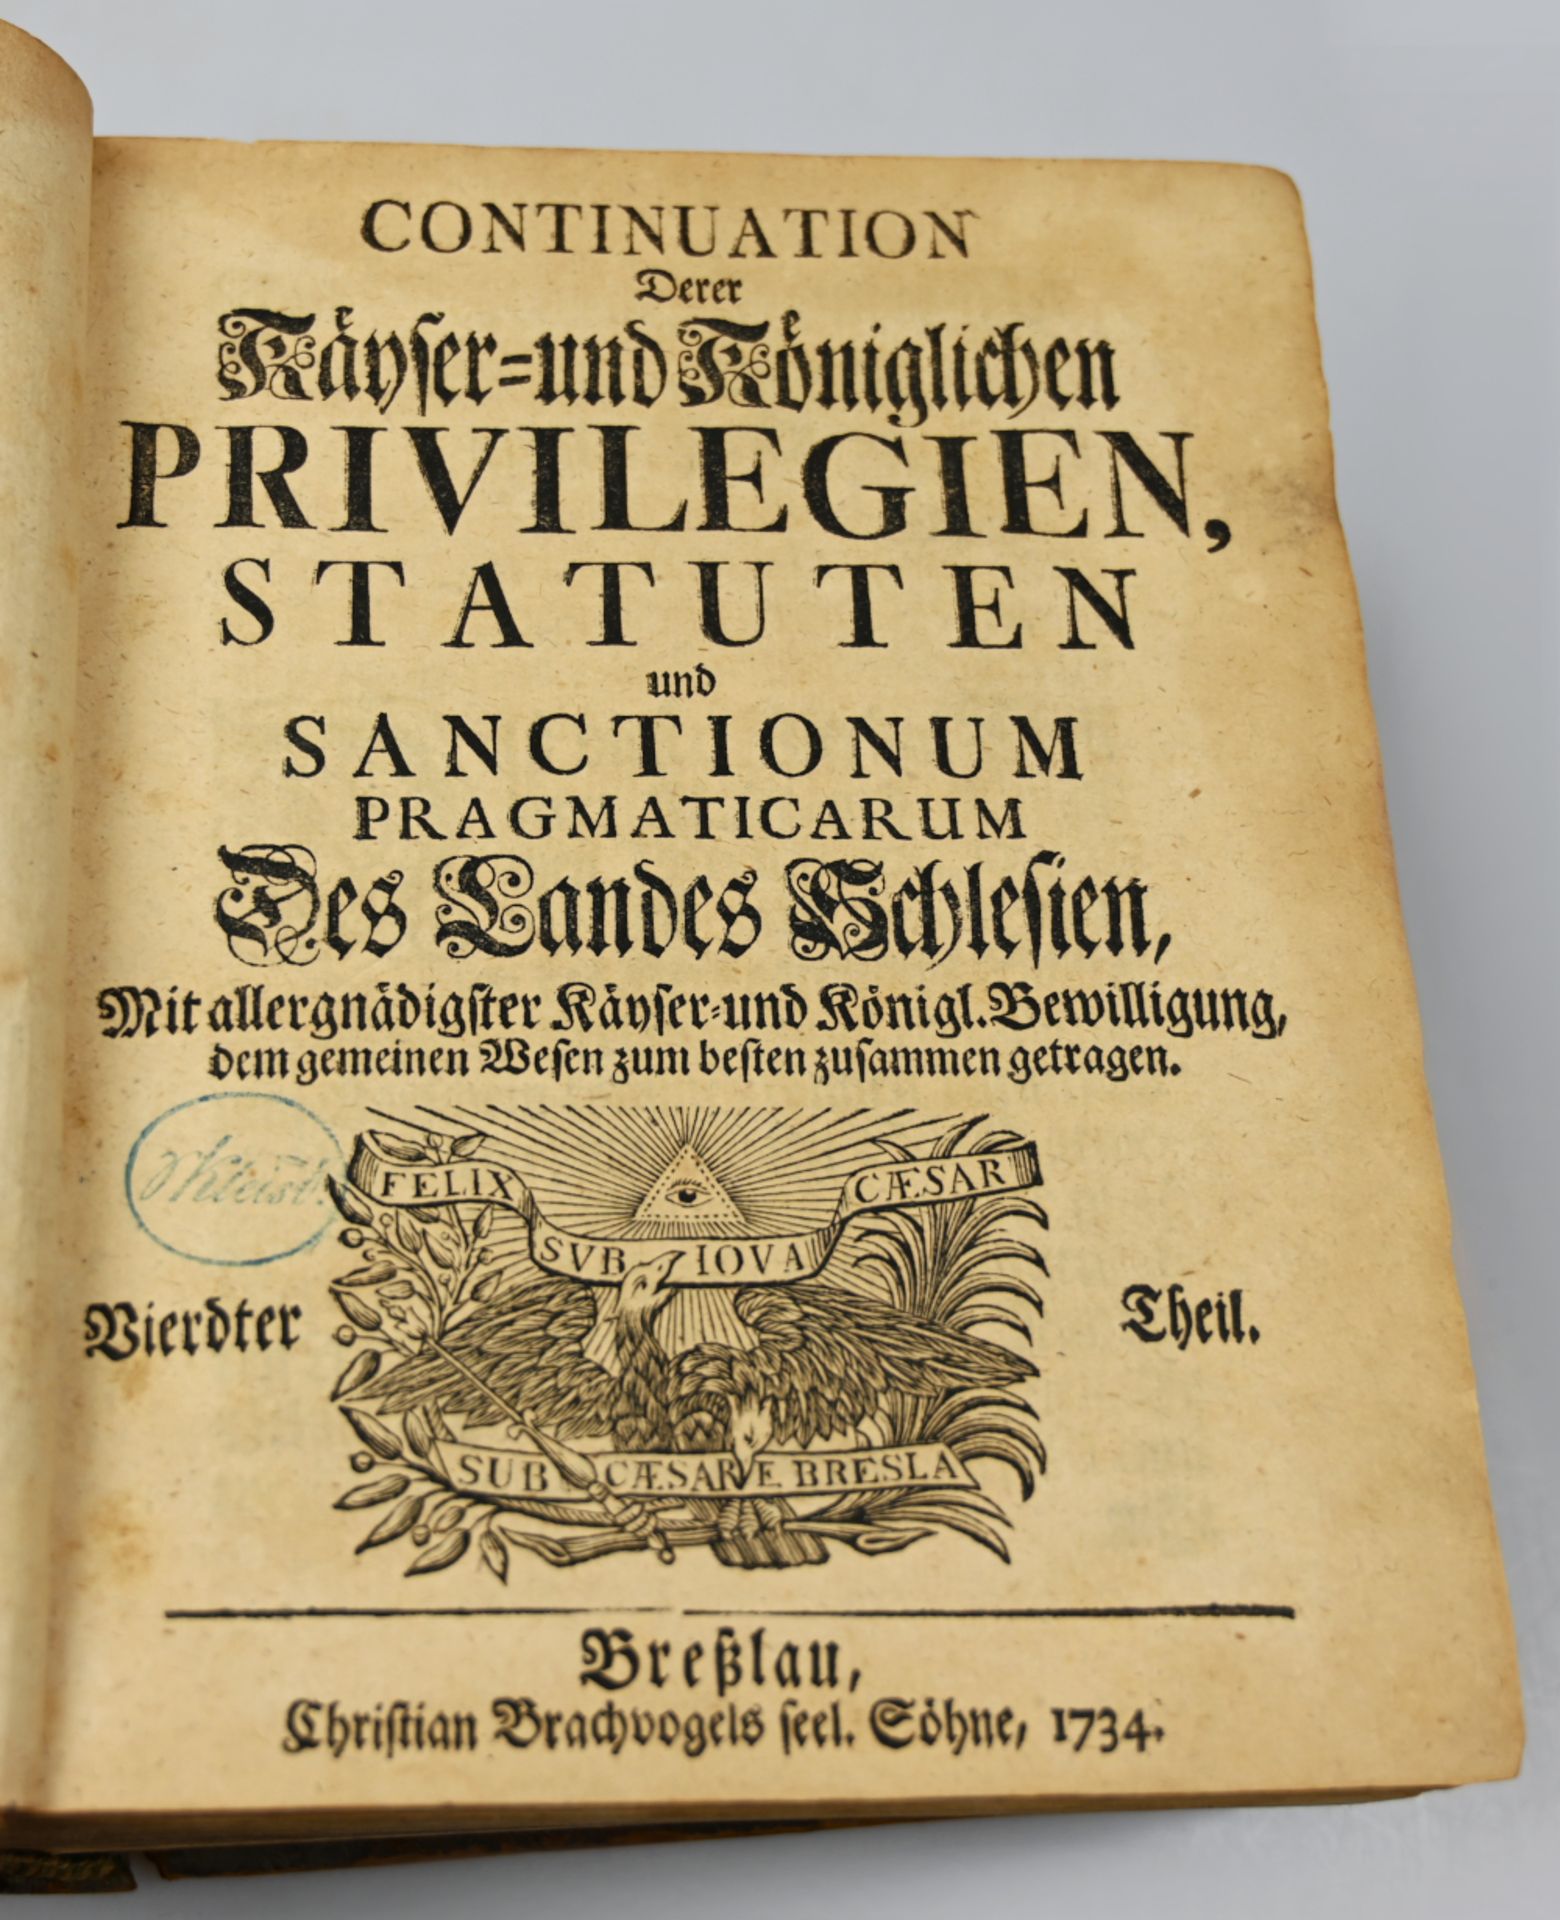 1 Buch "Continuation Derer Kayser- und Königlichen Privilegien, Statuten und Sanctionum Pragmaticaru